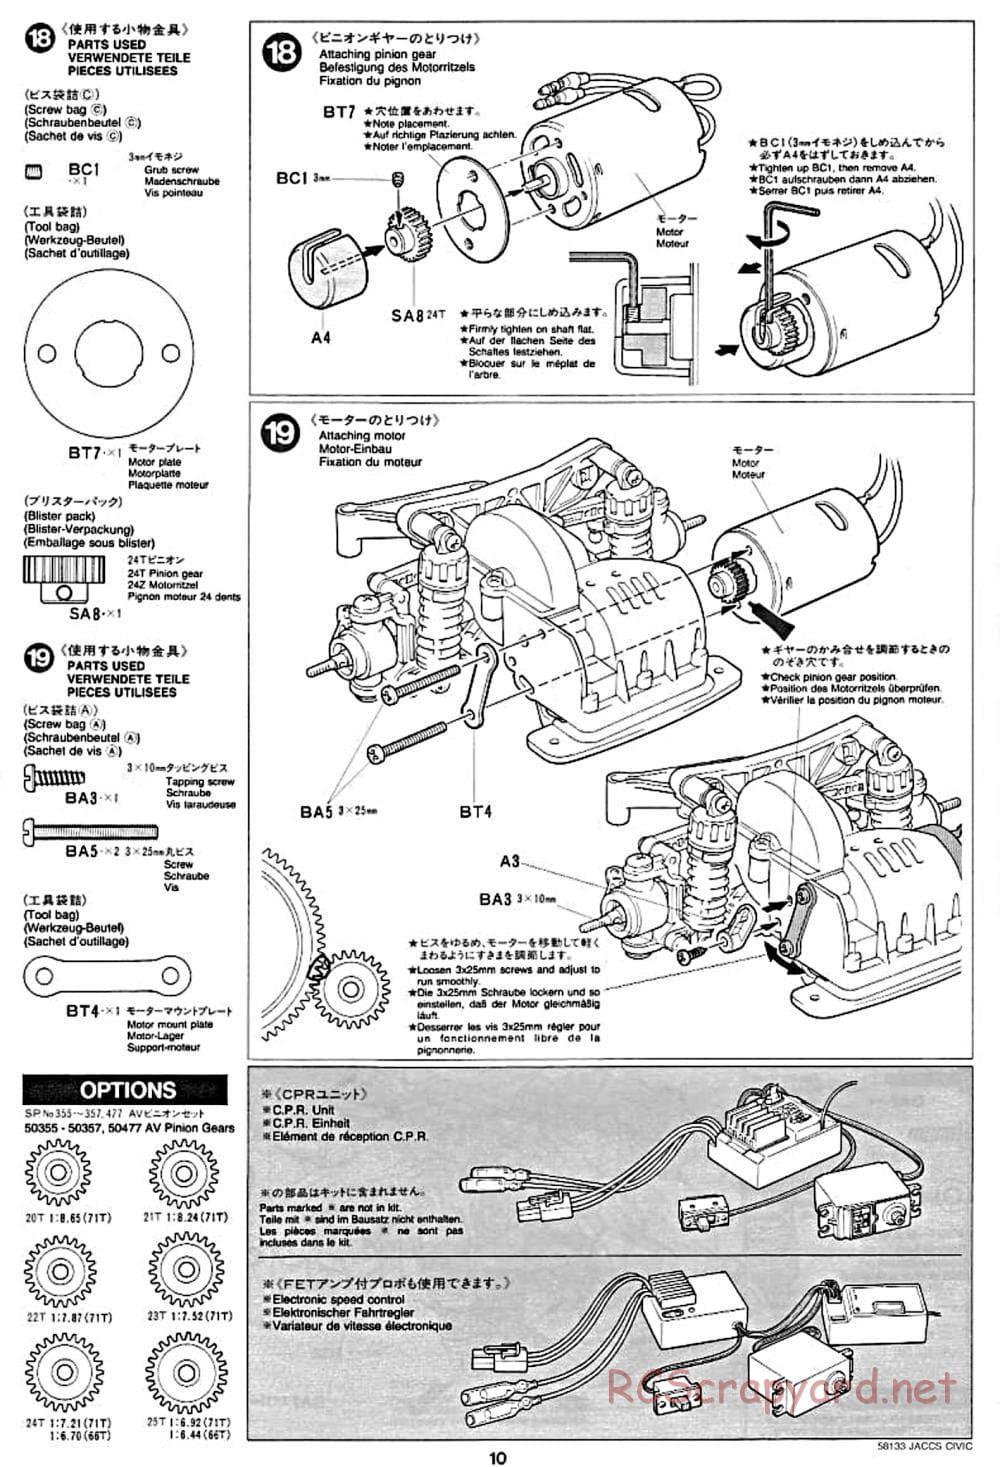 Tamiya - JACCS Honda Civic - FF-01 Chassis - Manual - Page 10